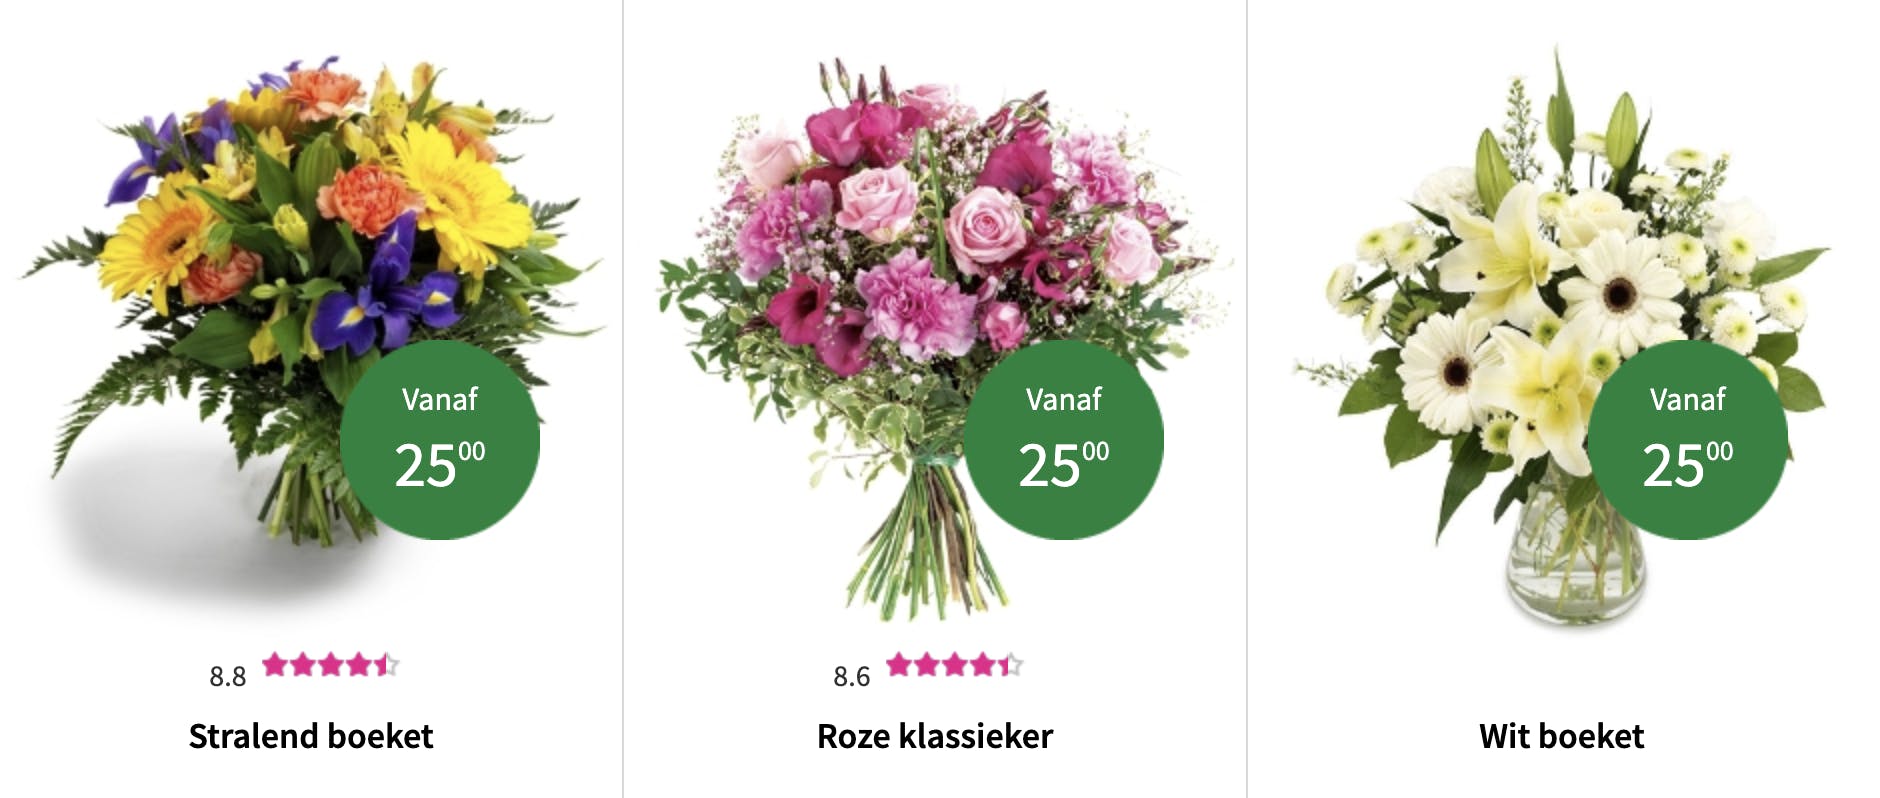 De top 12 speciale gelegenheden voor bloemen. Het vinden van de geschikte bloem voor iedere gelegenheid. Bestel nu eenvoudig en snel bloemen online voor iedere gelegenheid bij de Regiobloemist selectie bloemen. 